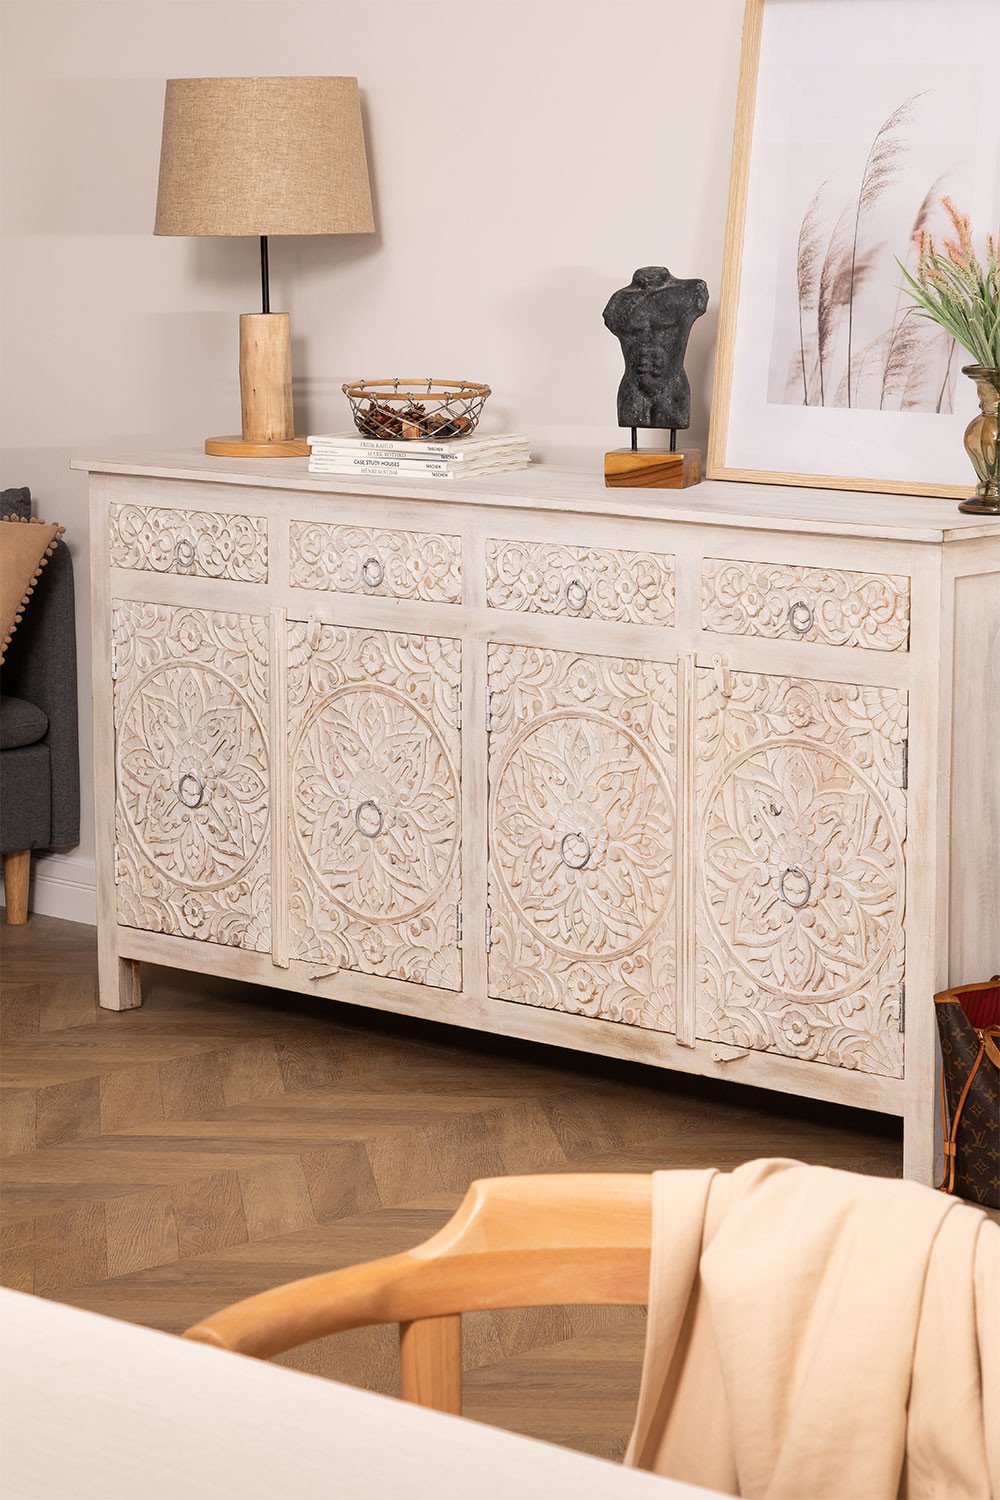 Mueble Aparador Para el Salon Blanco Bicolor Lucca